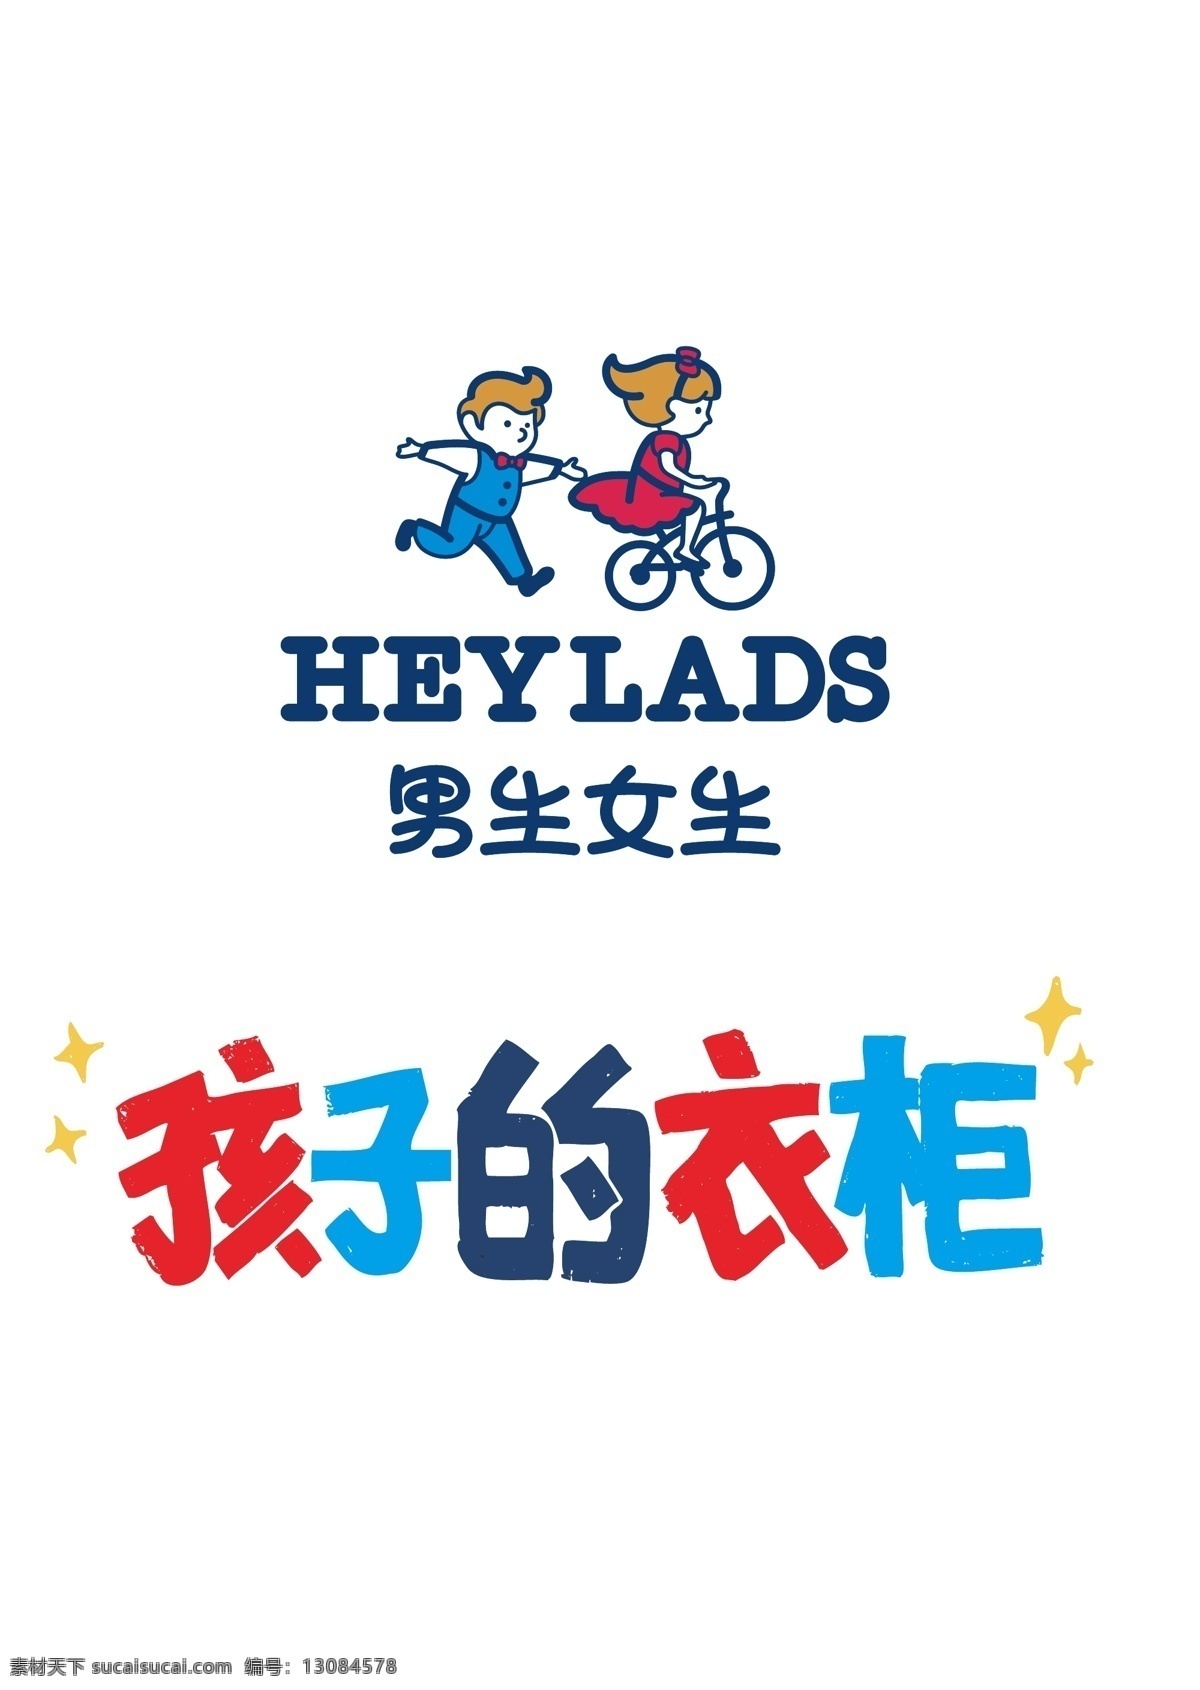 男生女生 童装 logo heylads 男生女生童装 矢量图 童装品牌 孩子的衣柜 logo设计